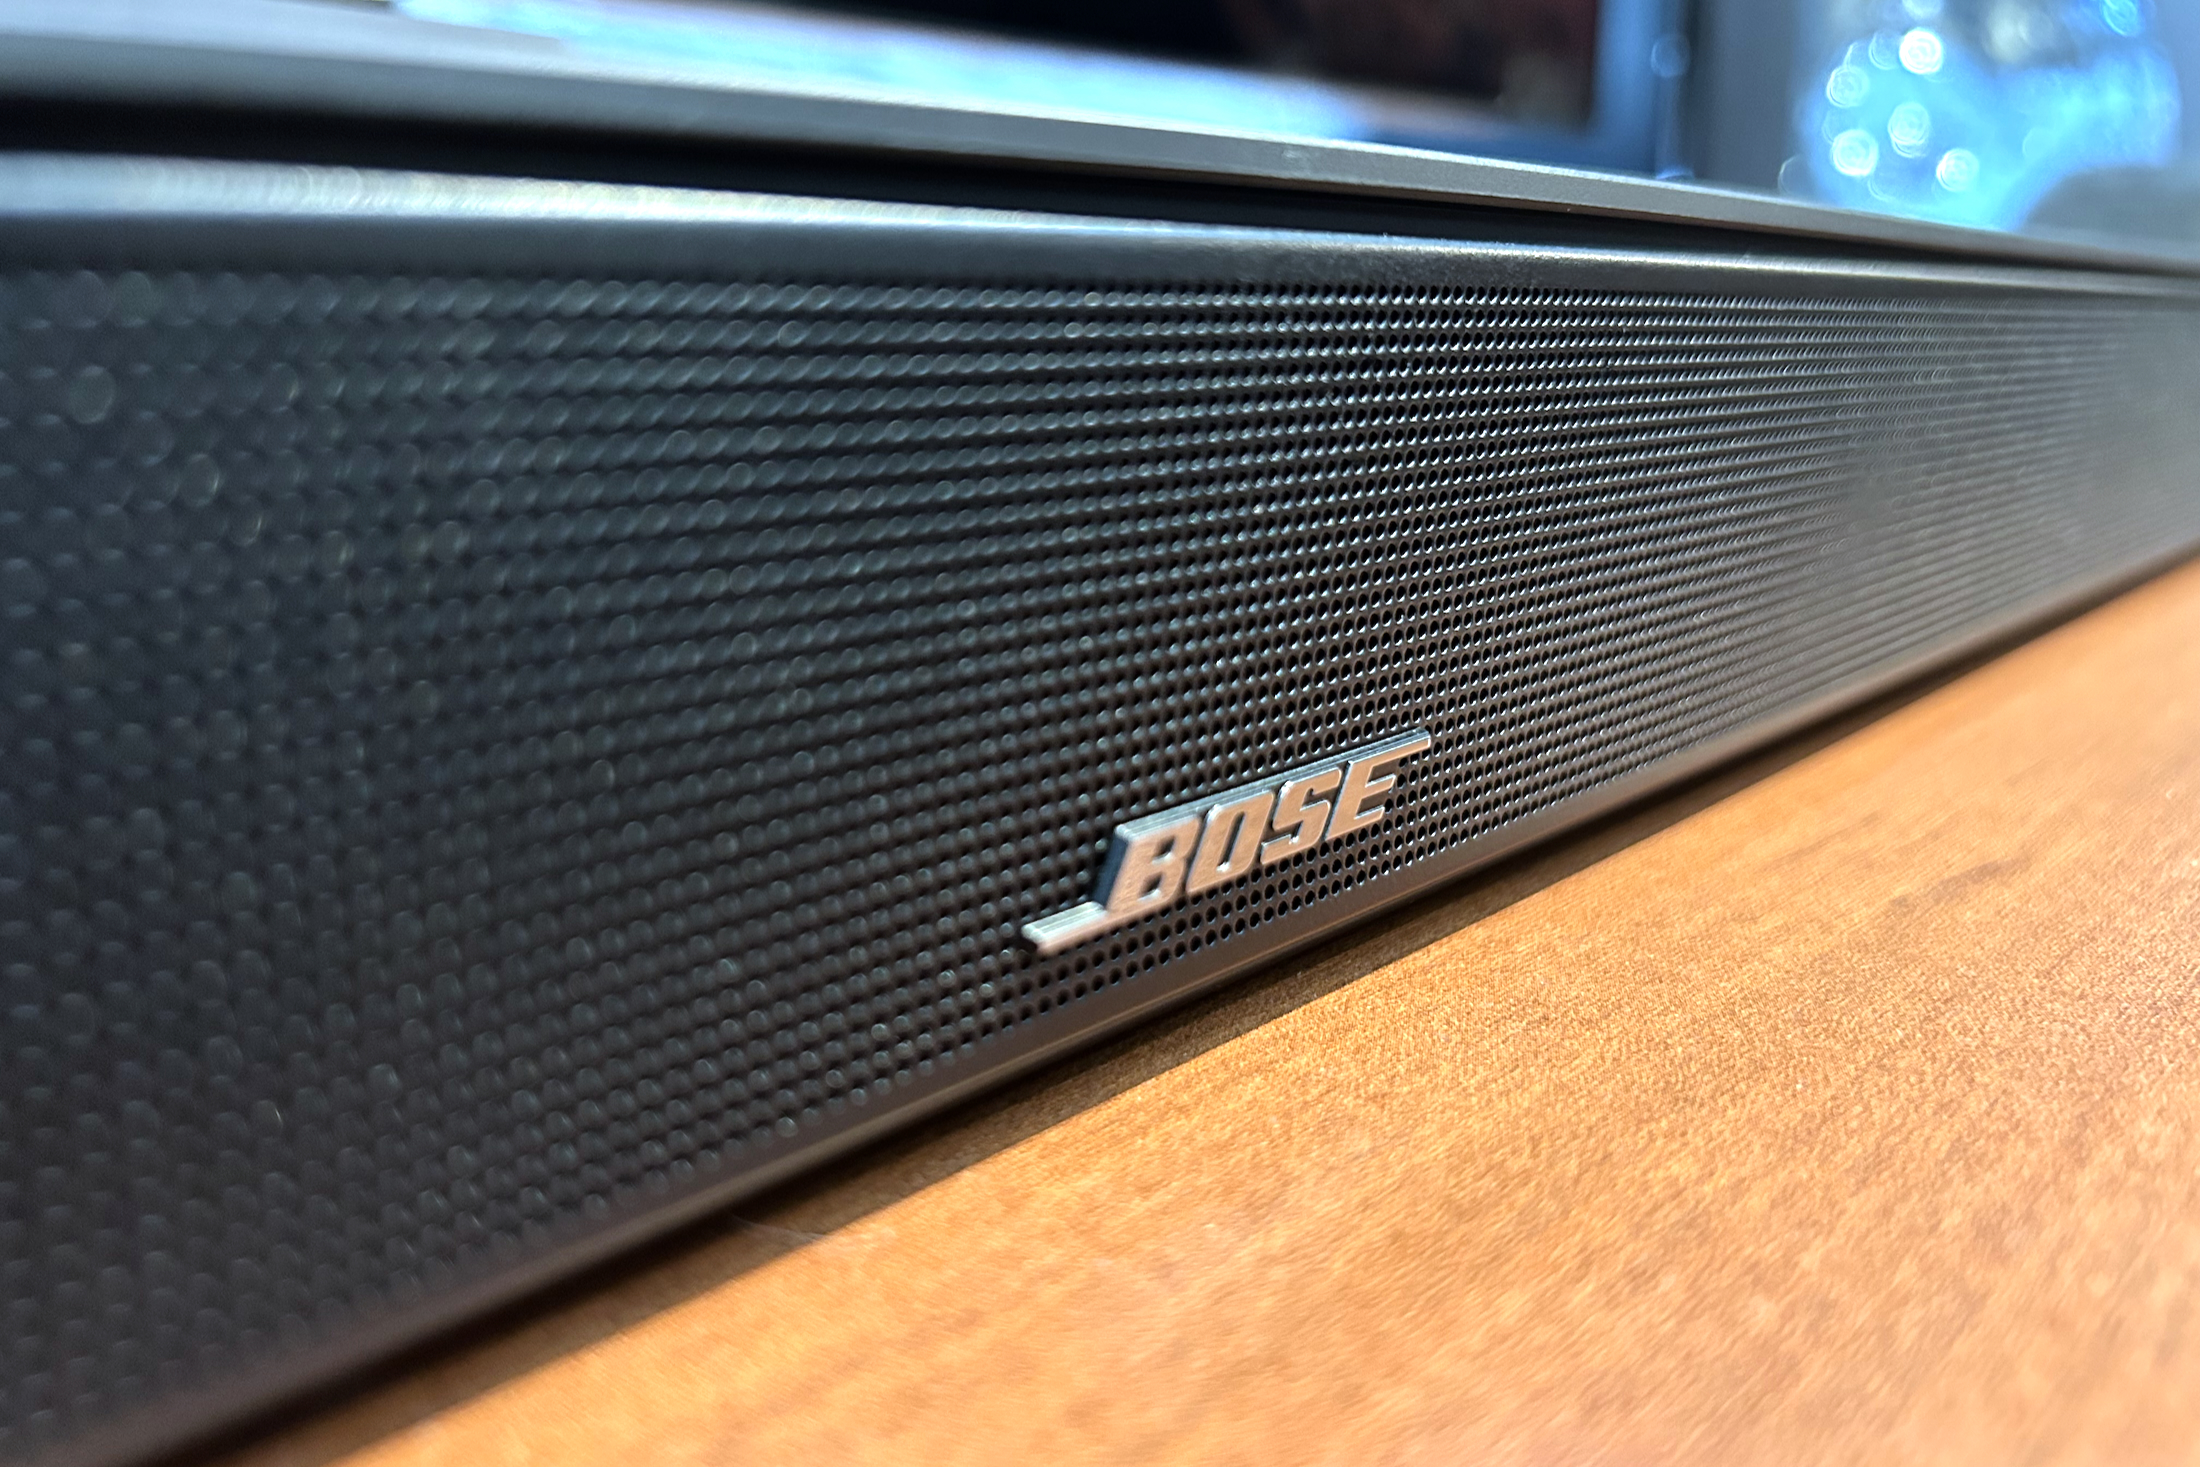 than bigger | Soundbar body review: Bose 600 Smart its Trends Digital